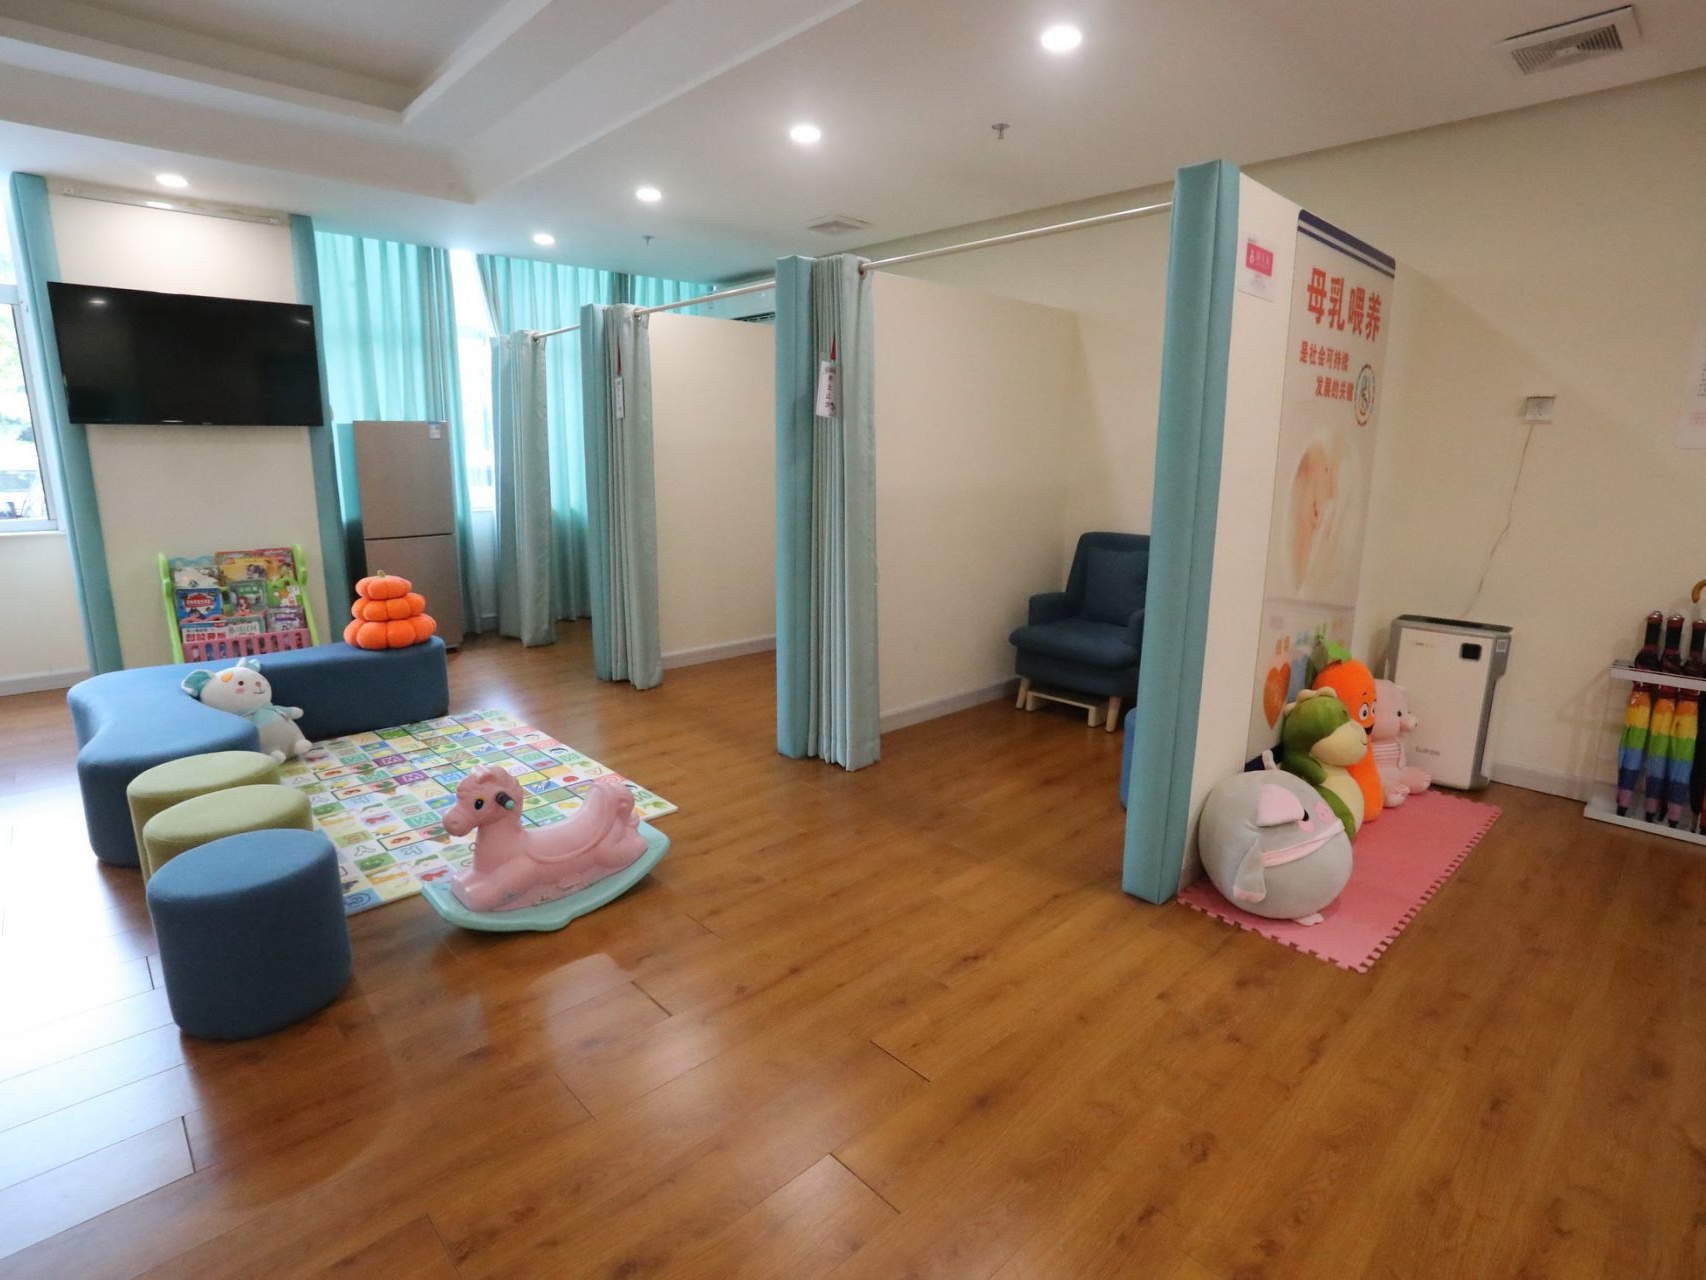 龙岗区建设深圳市母婴室示范点